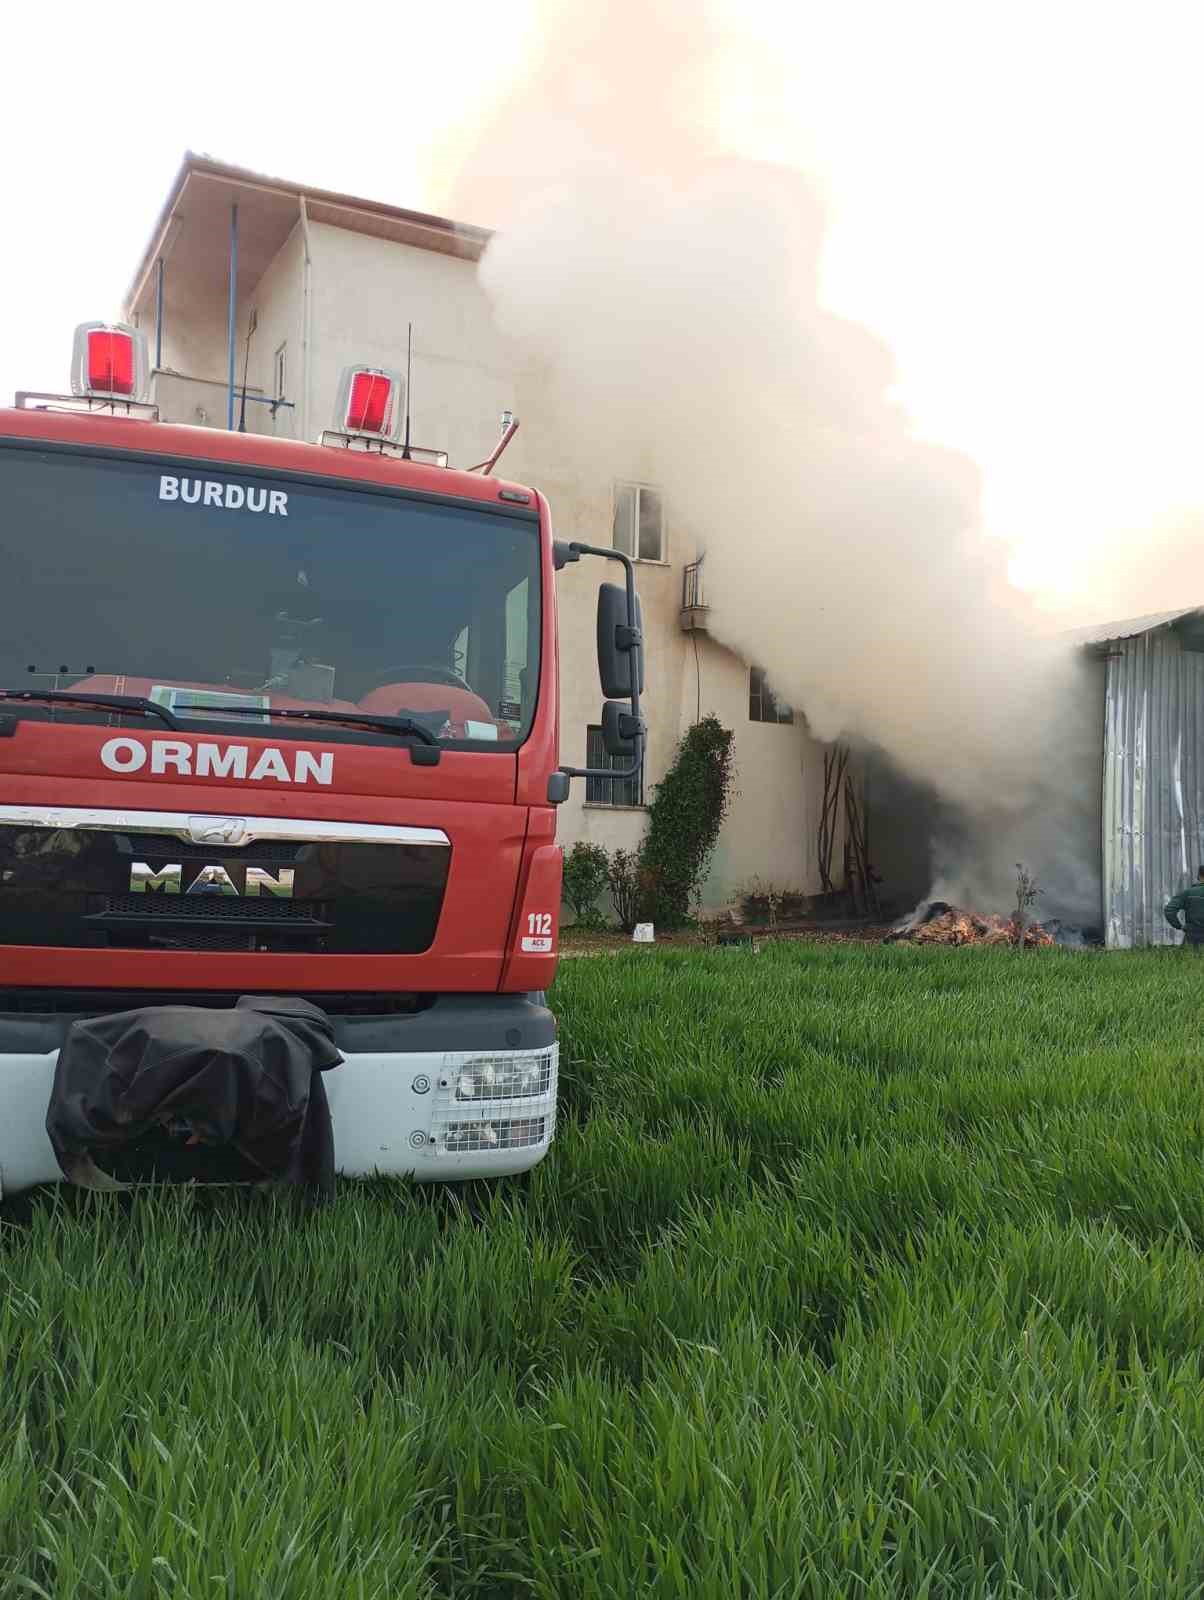 Burdur’da samanlıkta başlayan yangın eve sıçradı, büyük çapta maddi hasar meydana geldi
